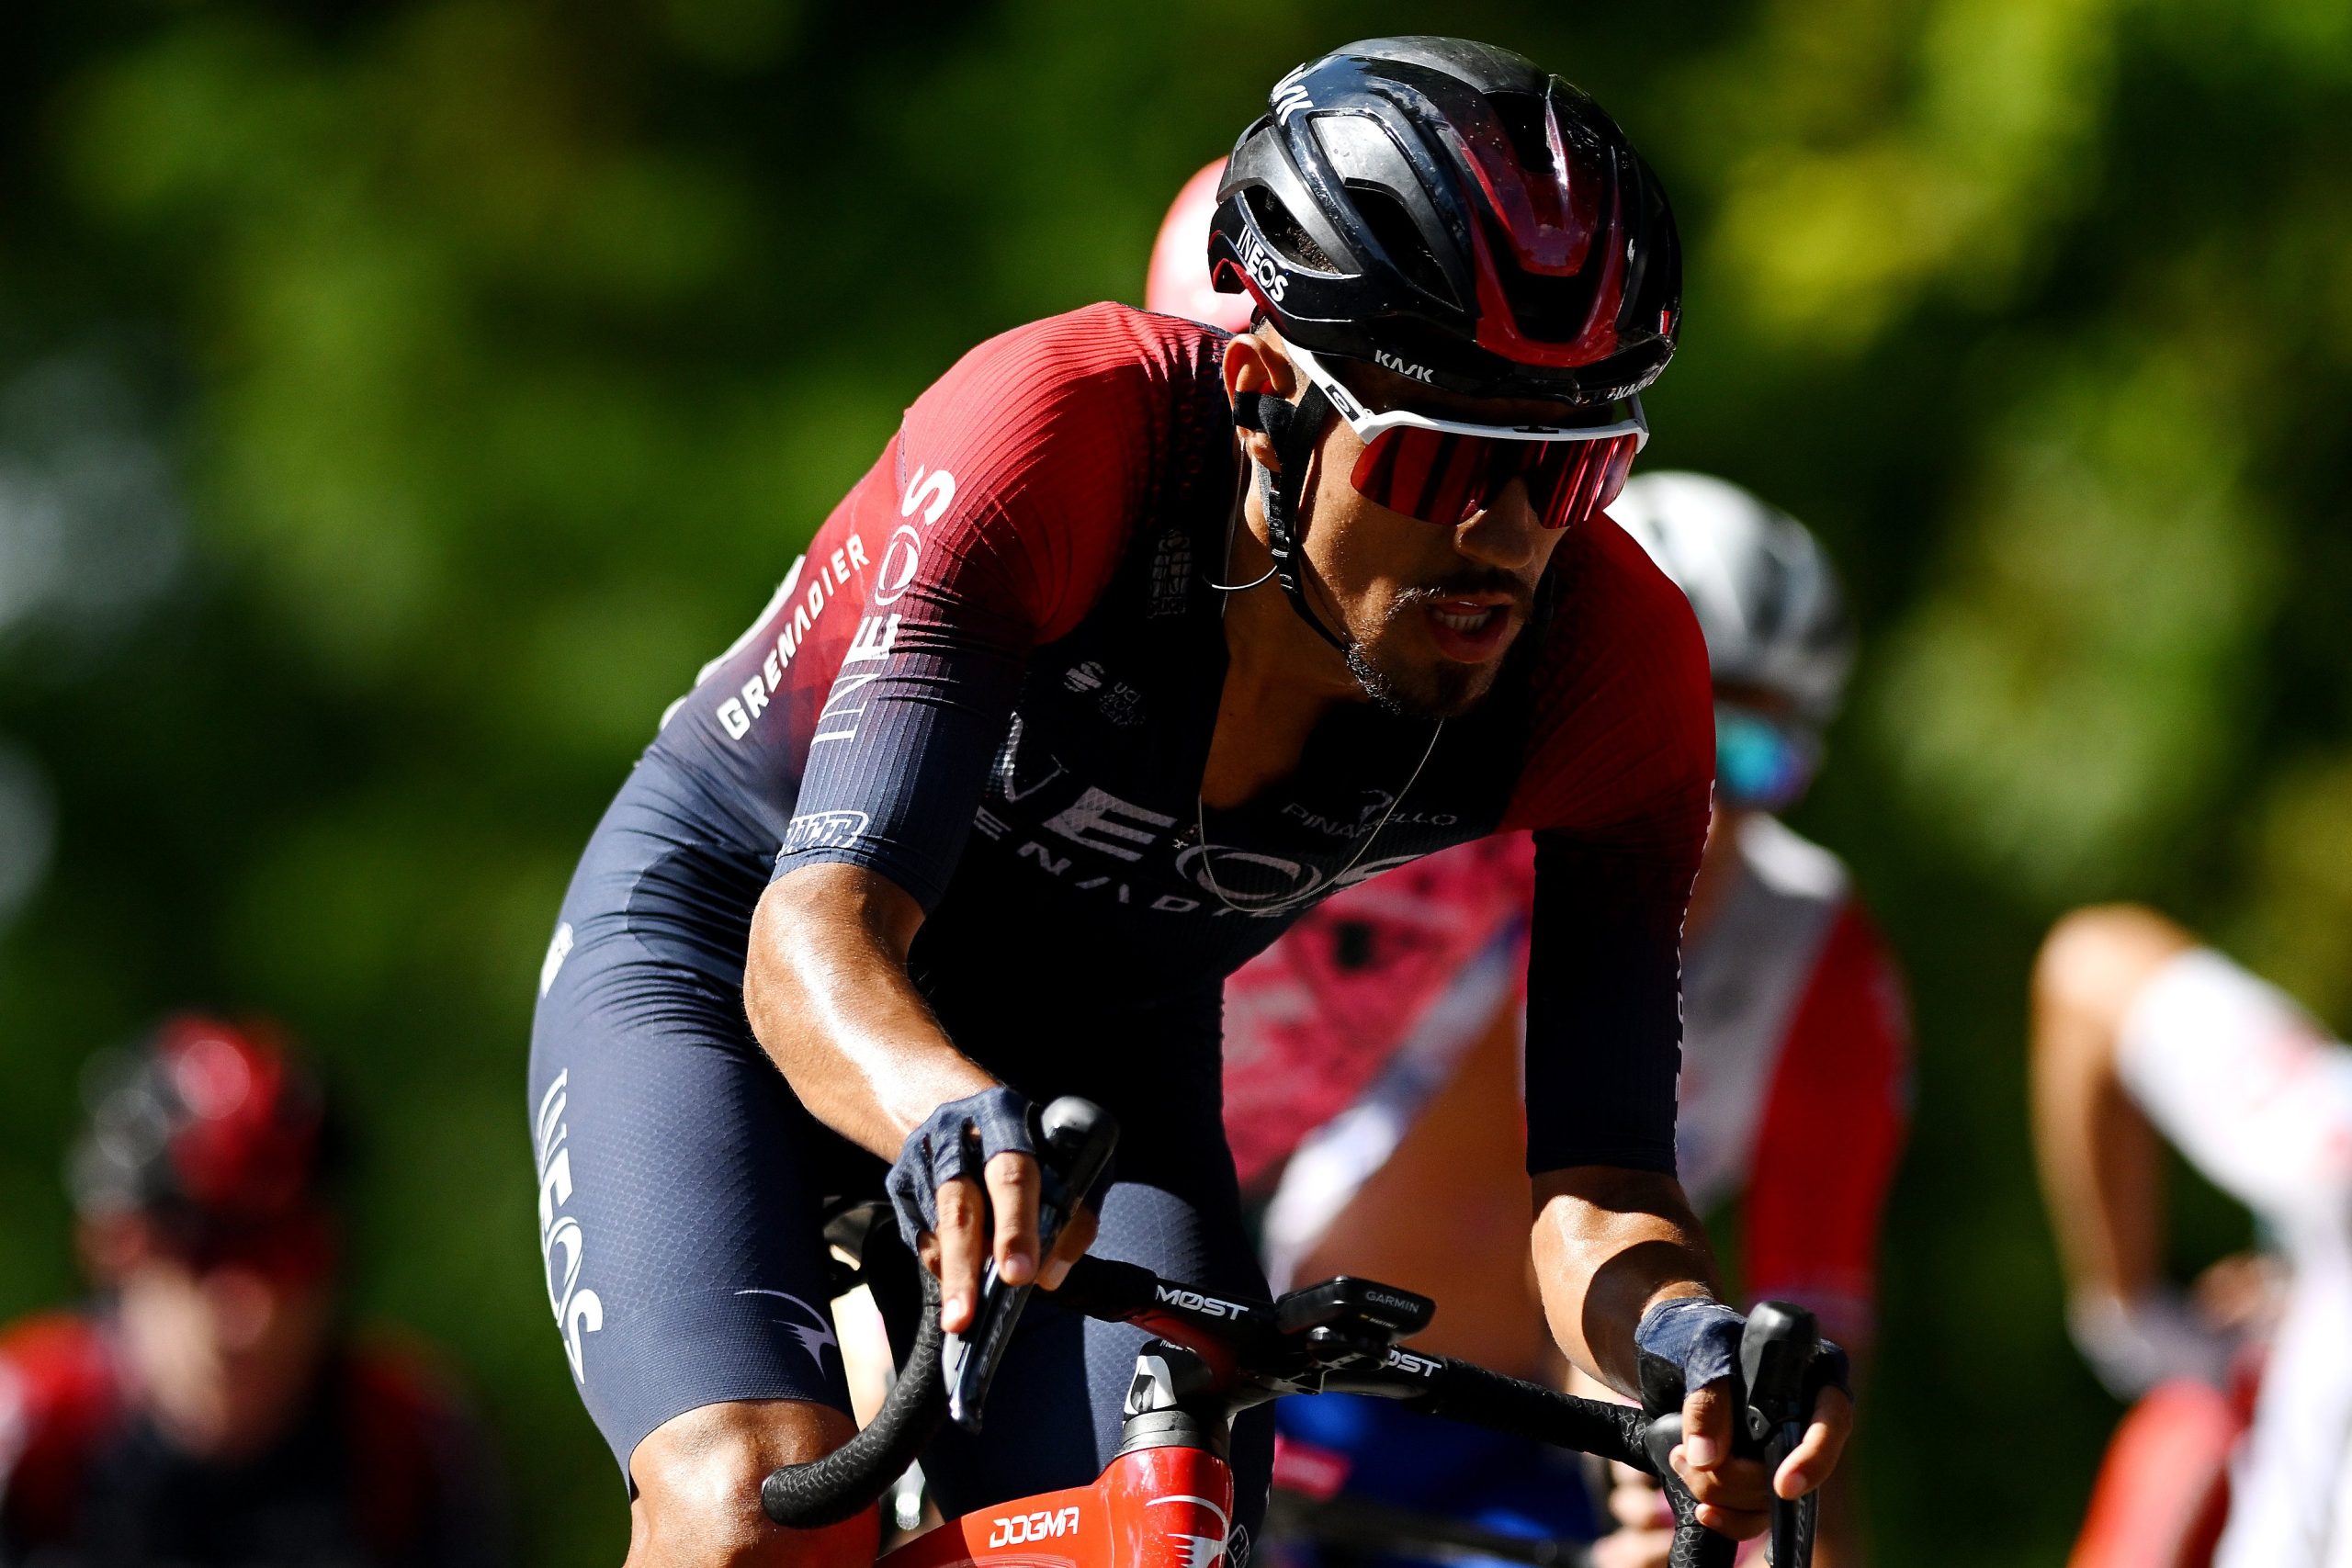 Daniel Martínez hizo podio en el Giro de la Toscana 2022